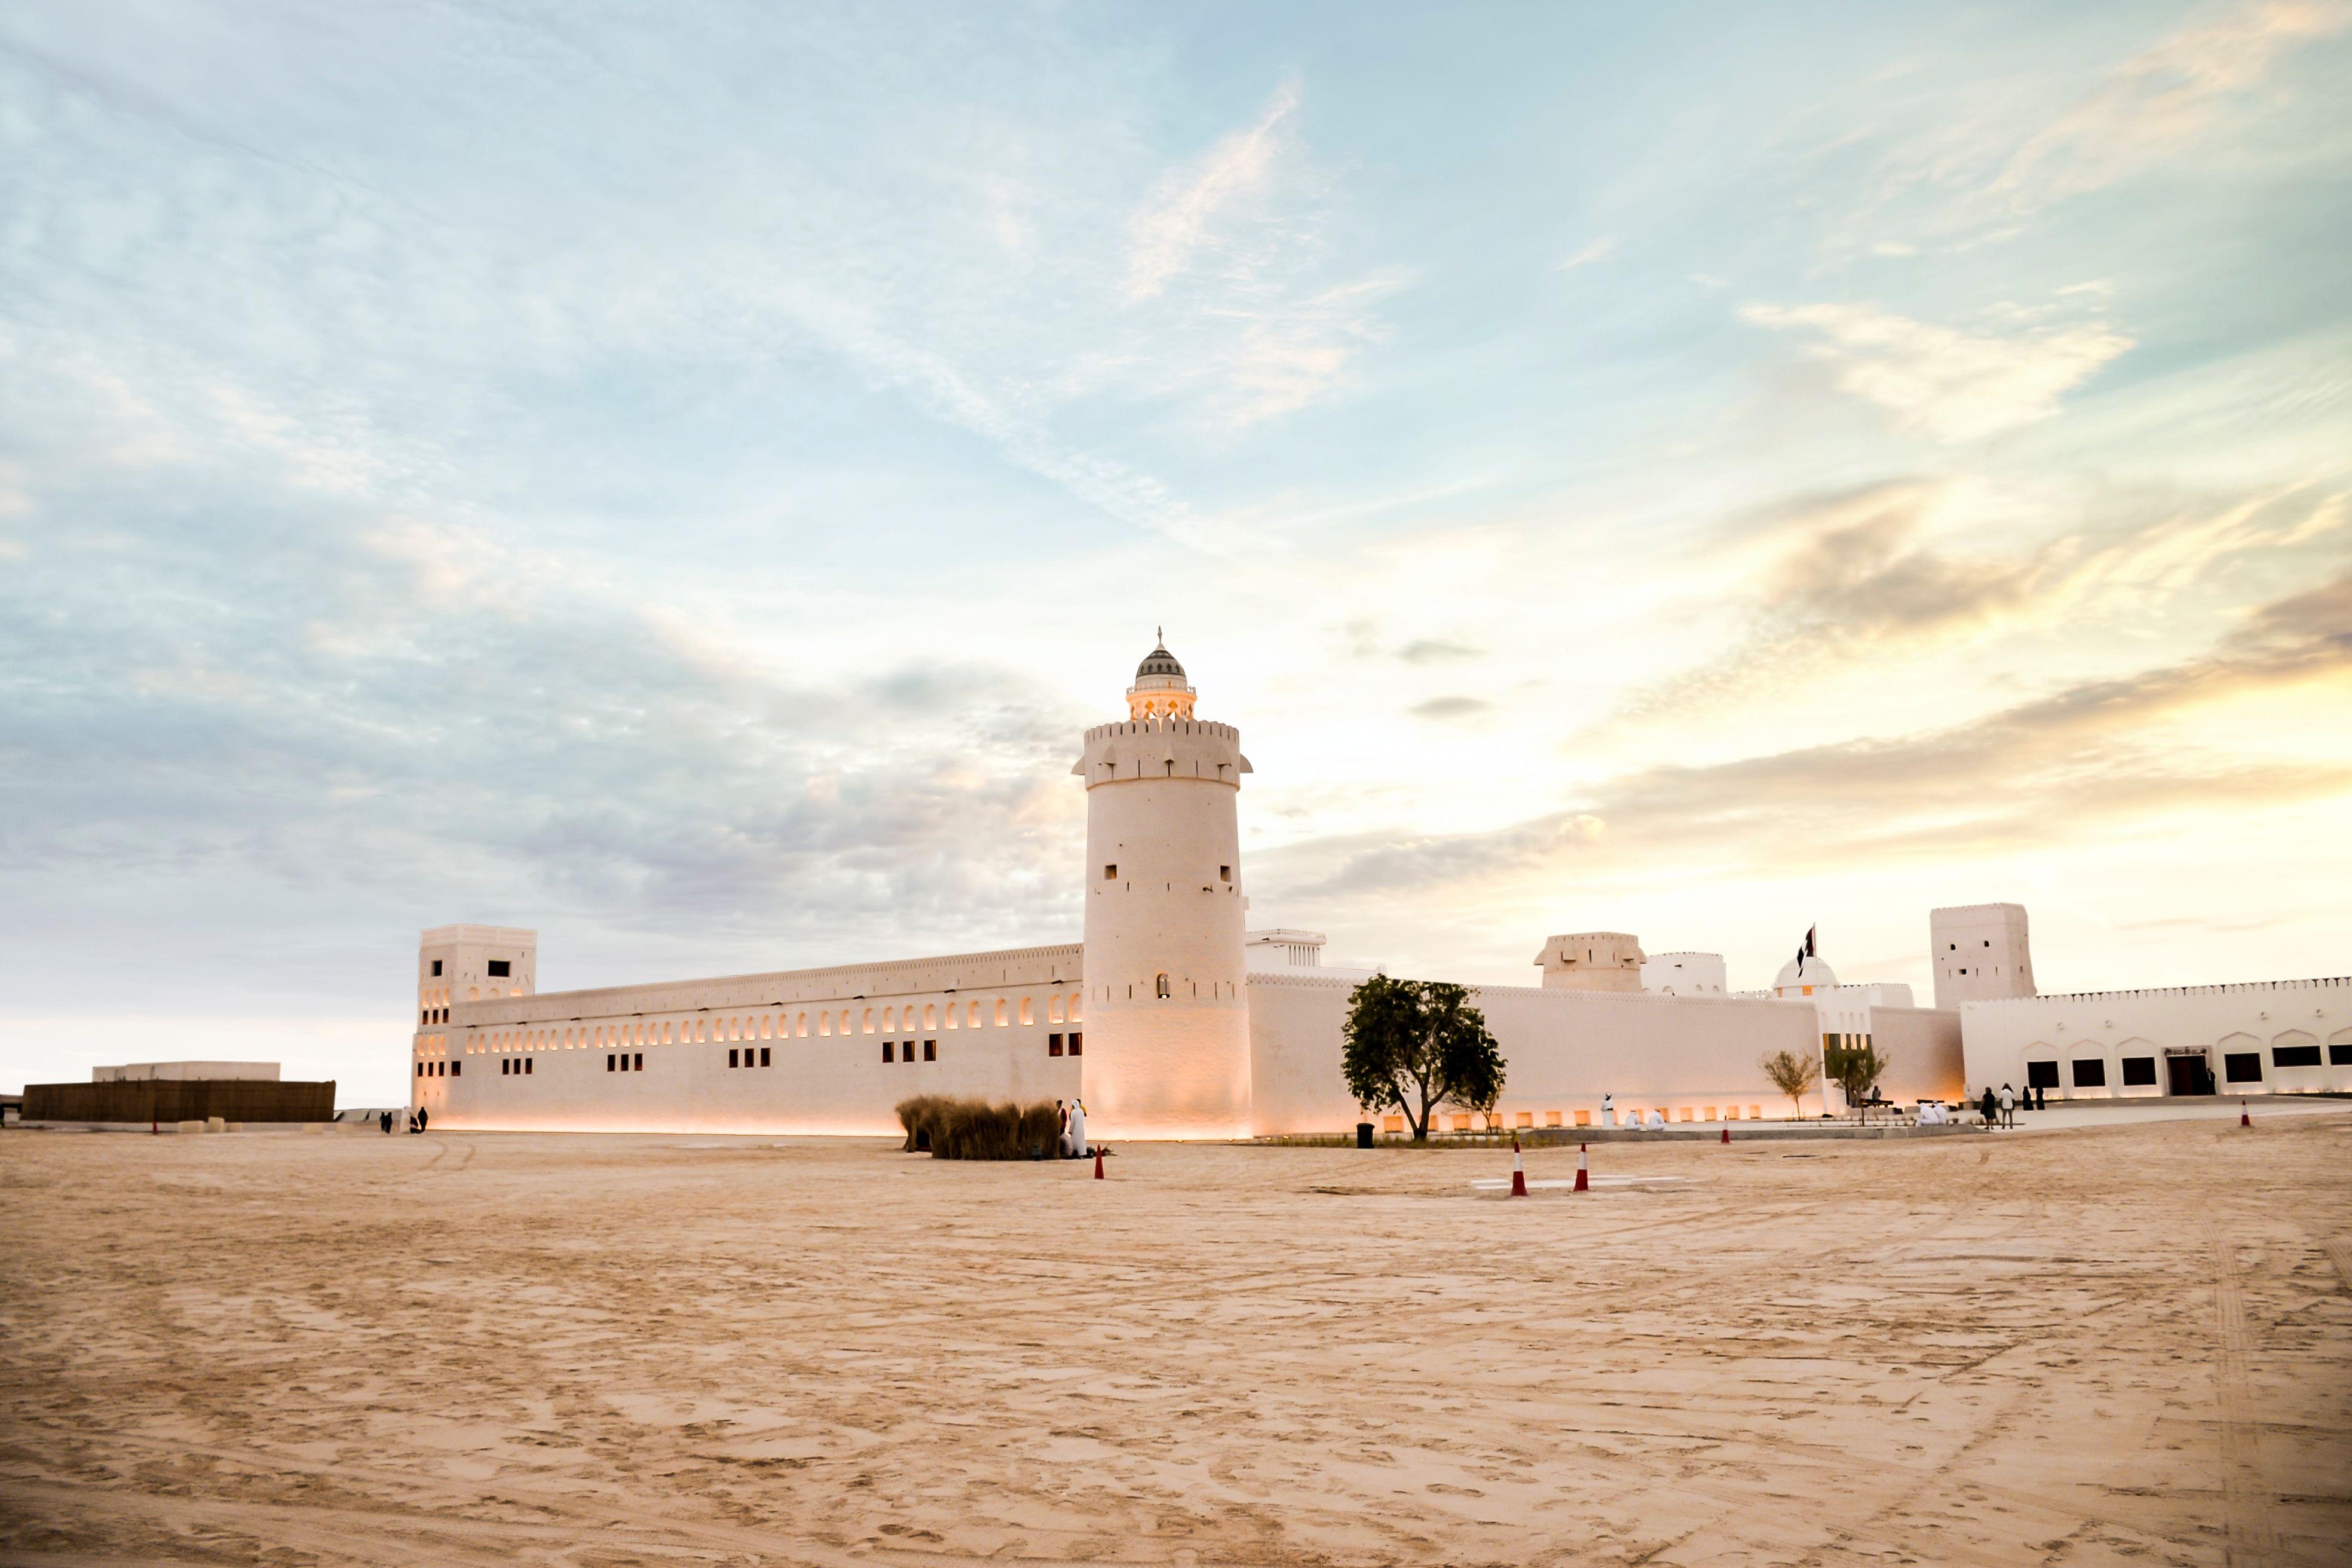 Qasr Al Hosn Abu Dhabi